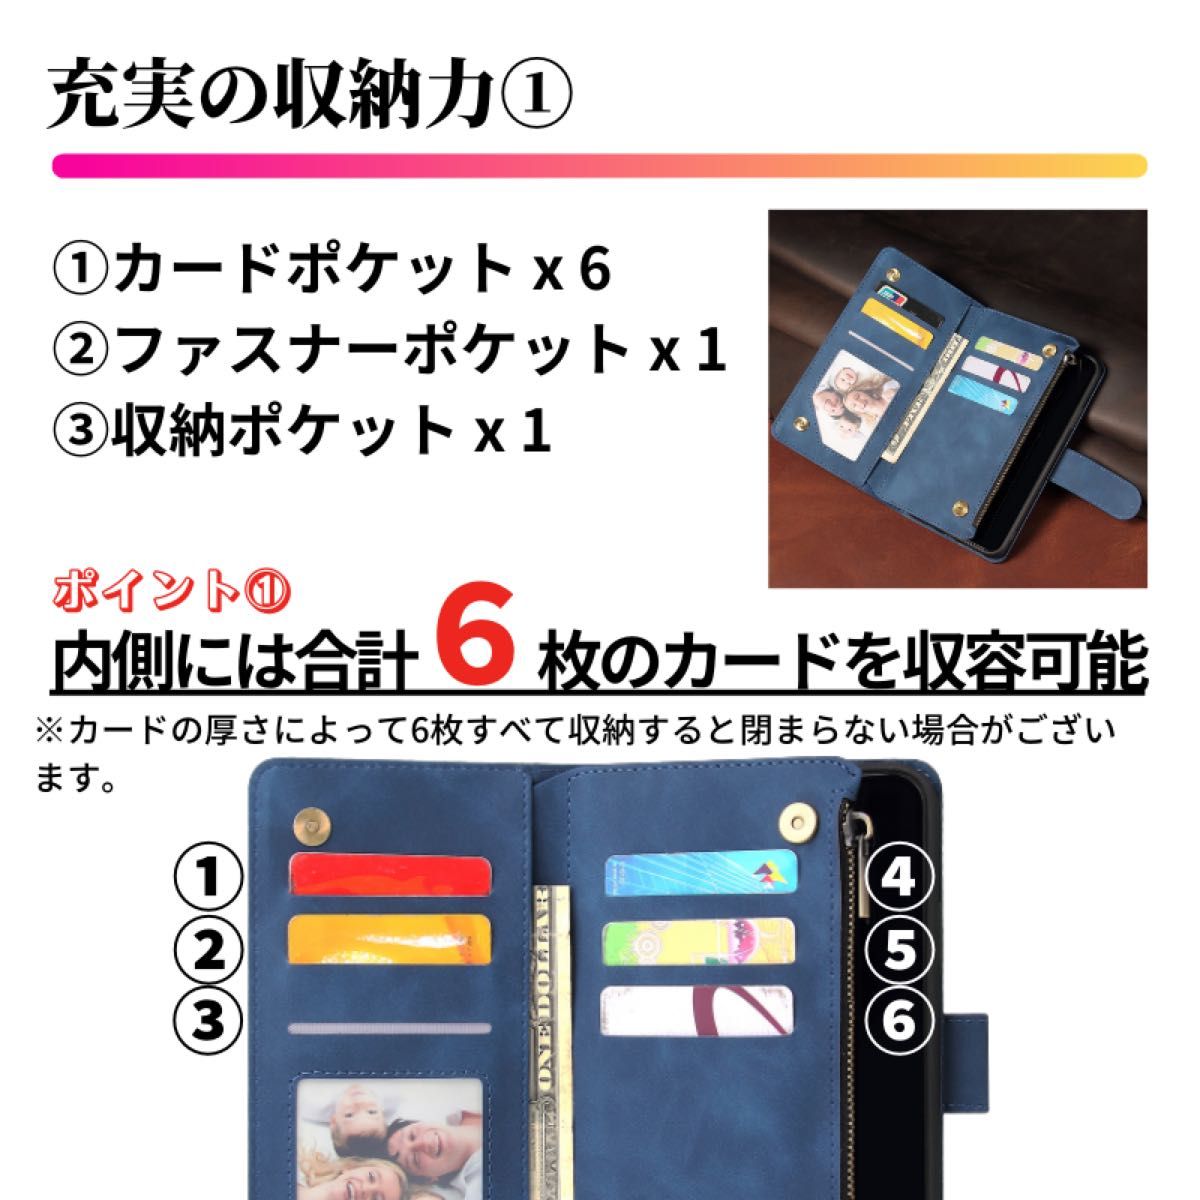 iPhone X XS ケース 手帳型 お財布 レザー カードケース ジップファスナー収納付 アイフォン スマホケース ブルー